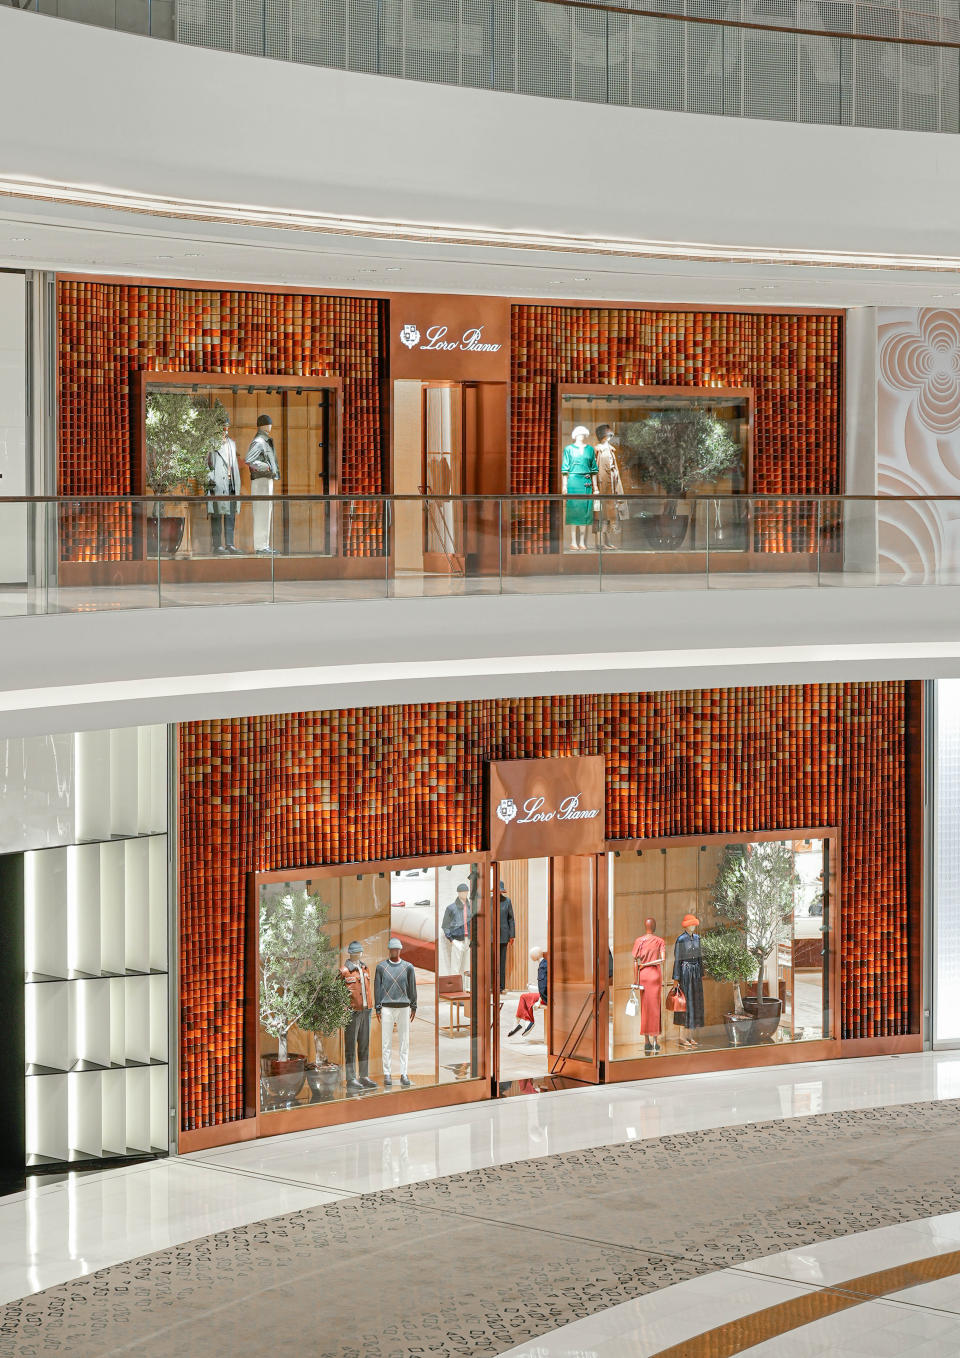 The new Loro Piana store in Dubai.